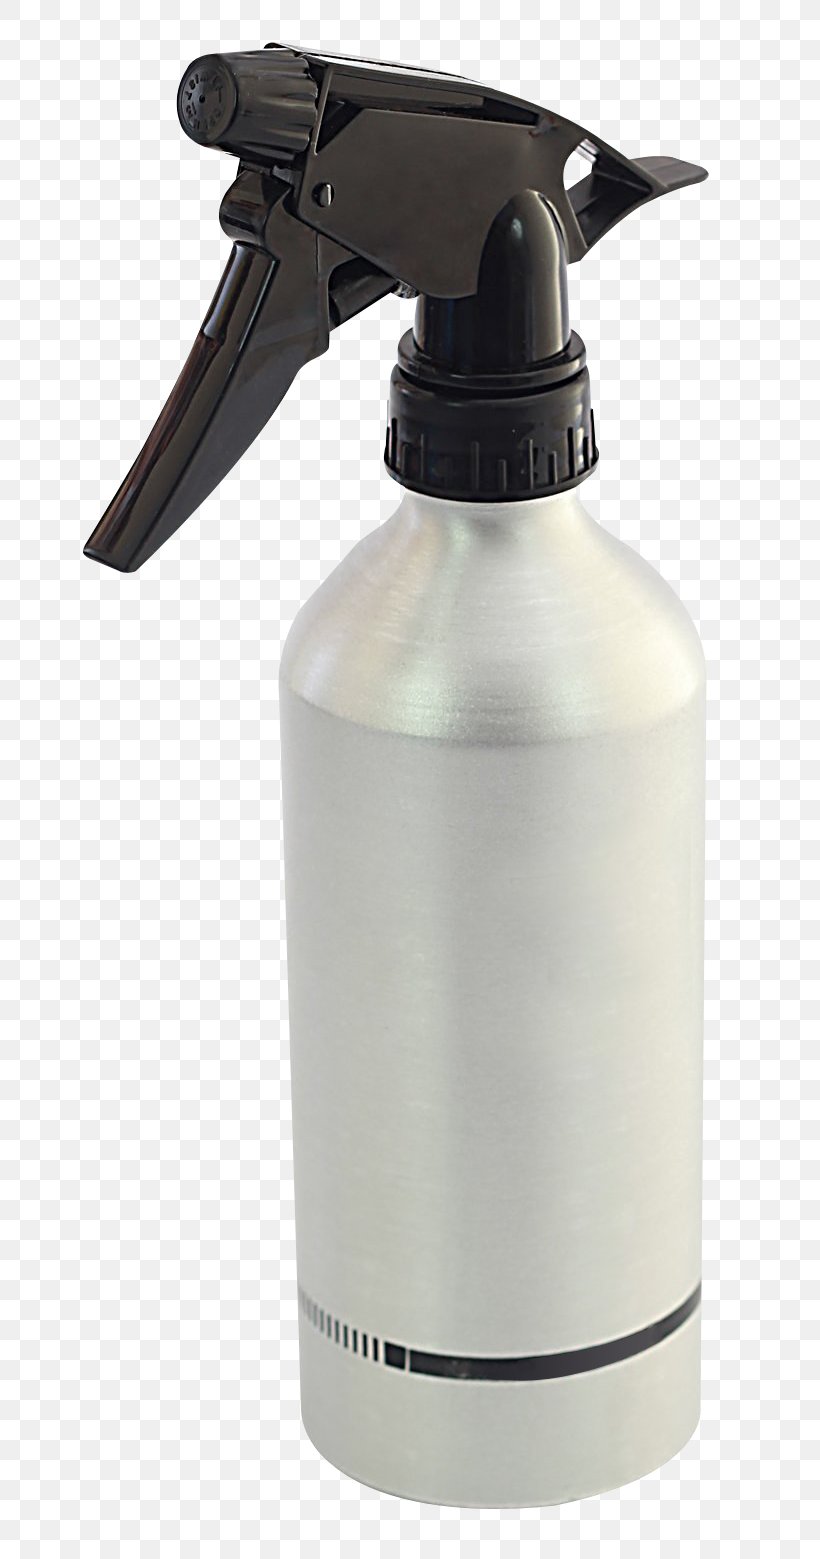 Spray Bottle Aerosol Spray, PNG, 786x1559px, Spray Bottle, Aerosol Spray, Bottle, Drinkware, Glass Download Free